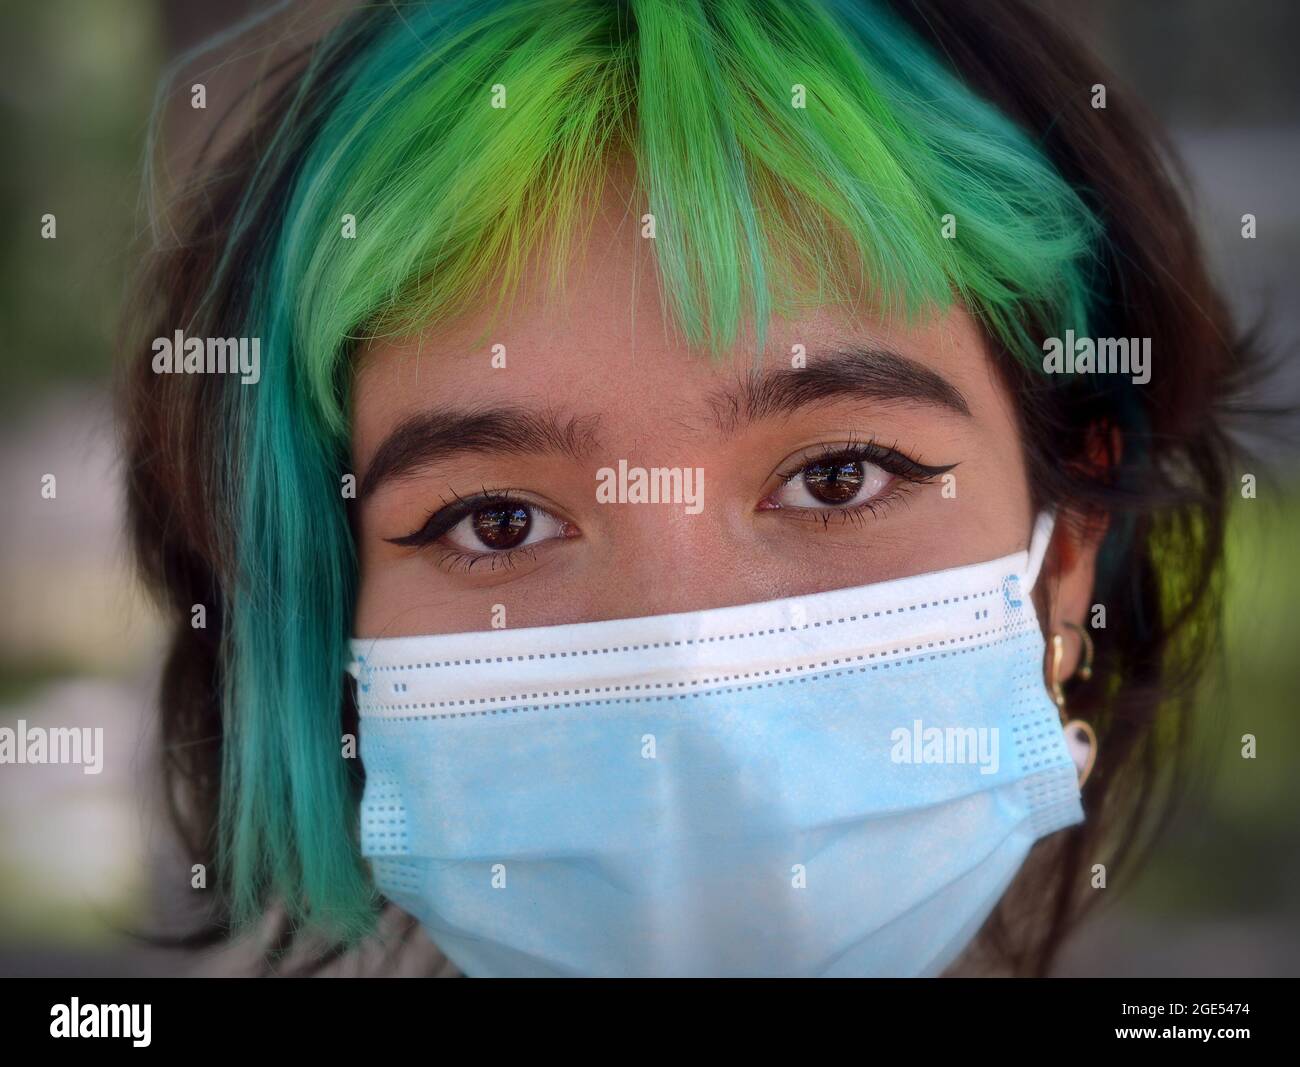 Teen ragazza caucasica con gli occhi graziosi marroni e i capelli tinti verde e blu indossa una maschera chirurgica blu chiaro durante la pandemia globale del coronavirus. Foto Stock